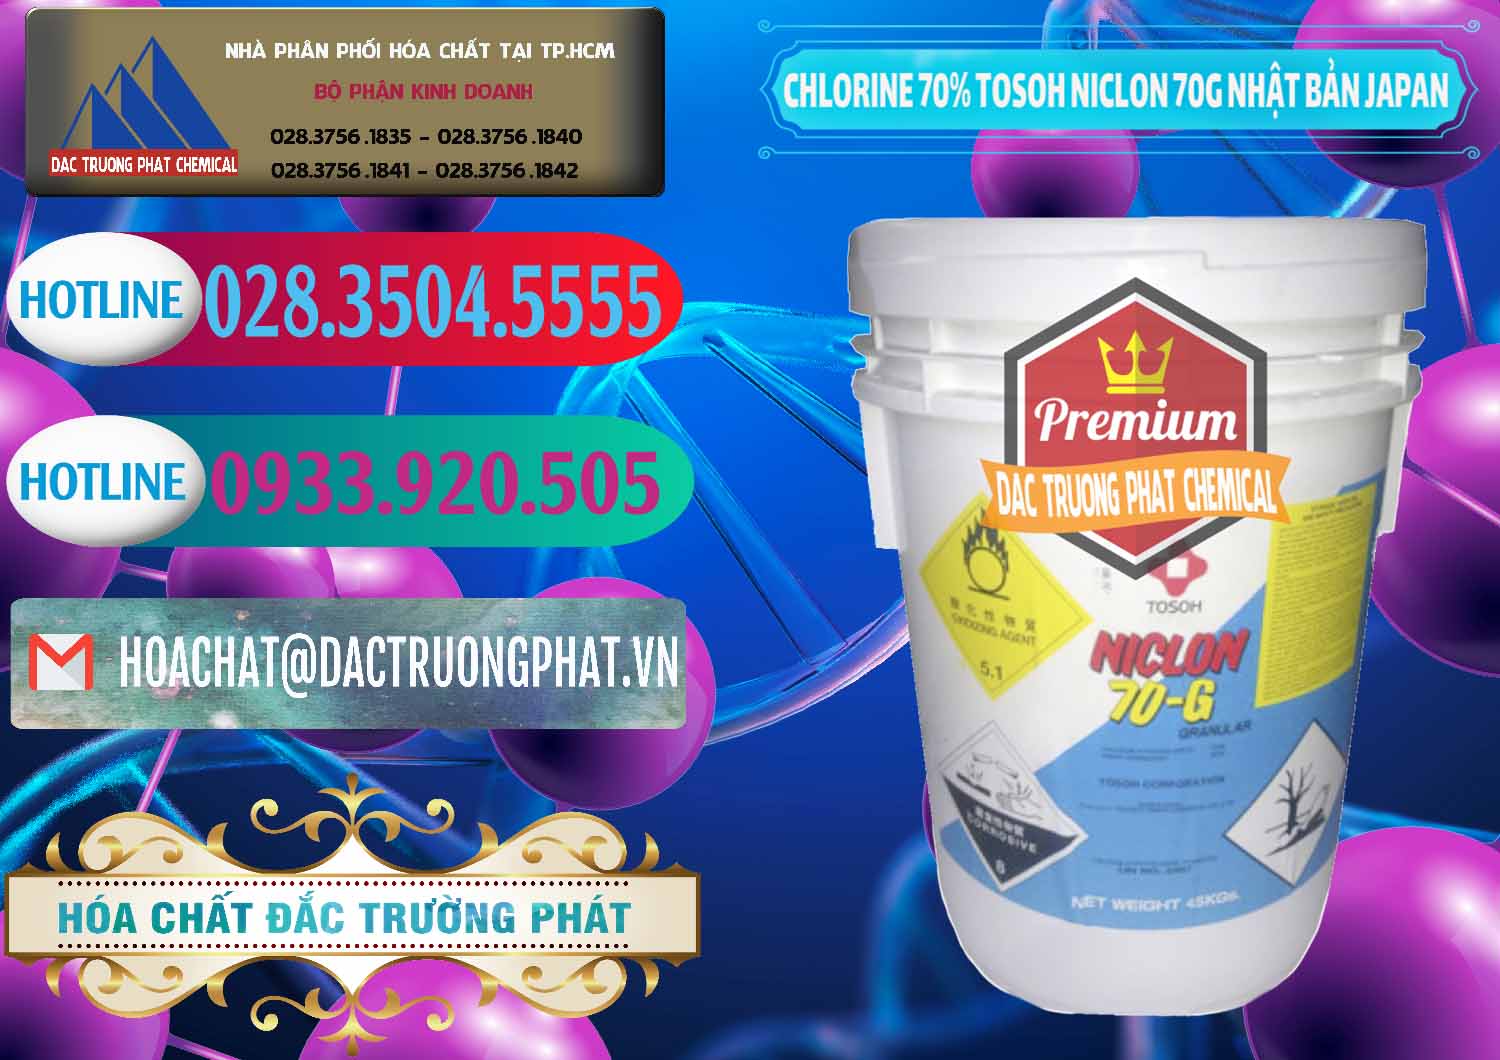 Công ty chuyên bán ( phân phối ) Clorin – Chlorine 70% Tosoh Niclon 70G Nhật Bản Japan - 0242 - Cty cung ứng - phân phối hóa chất tại TP.HCM - truongphat.vn